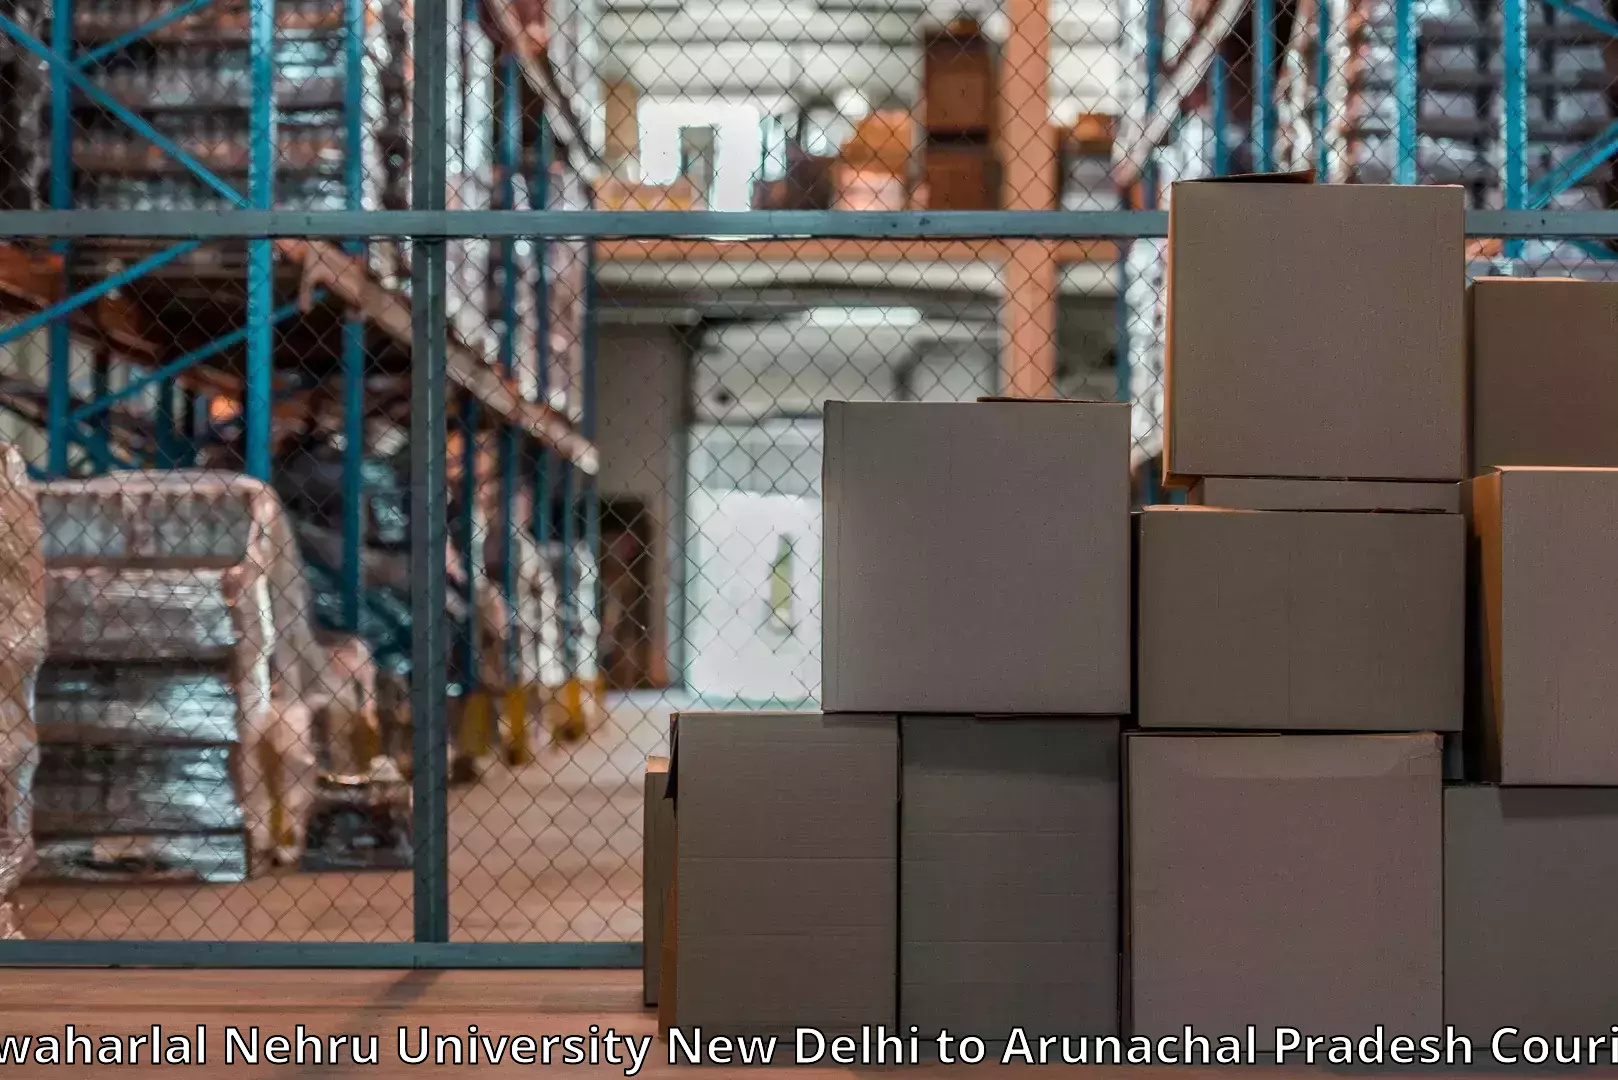 Expert moving and storage Jawaharlal Nehru University New Delhi to Arunachal Pradesh